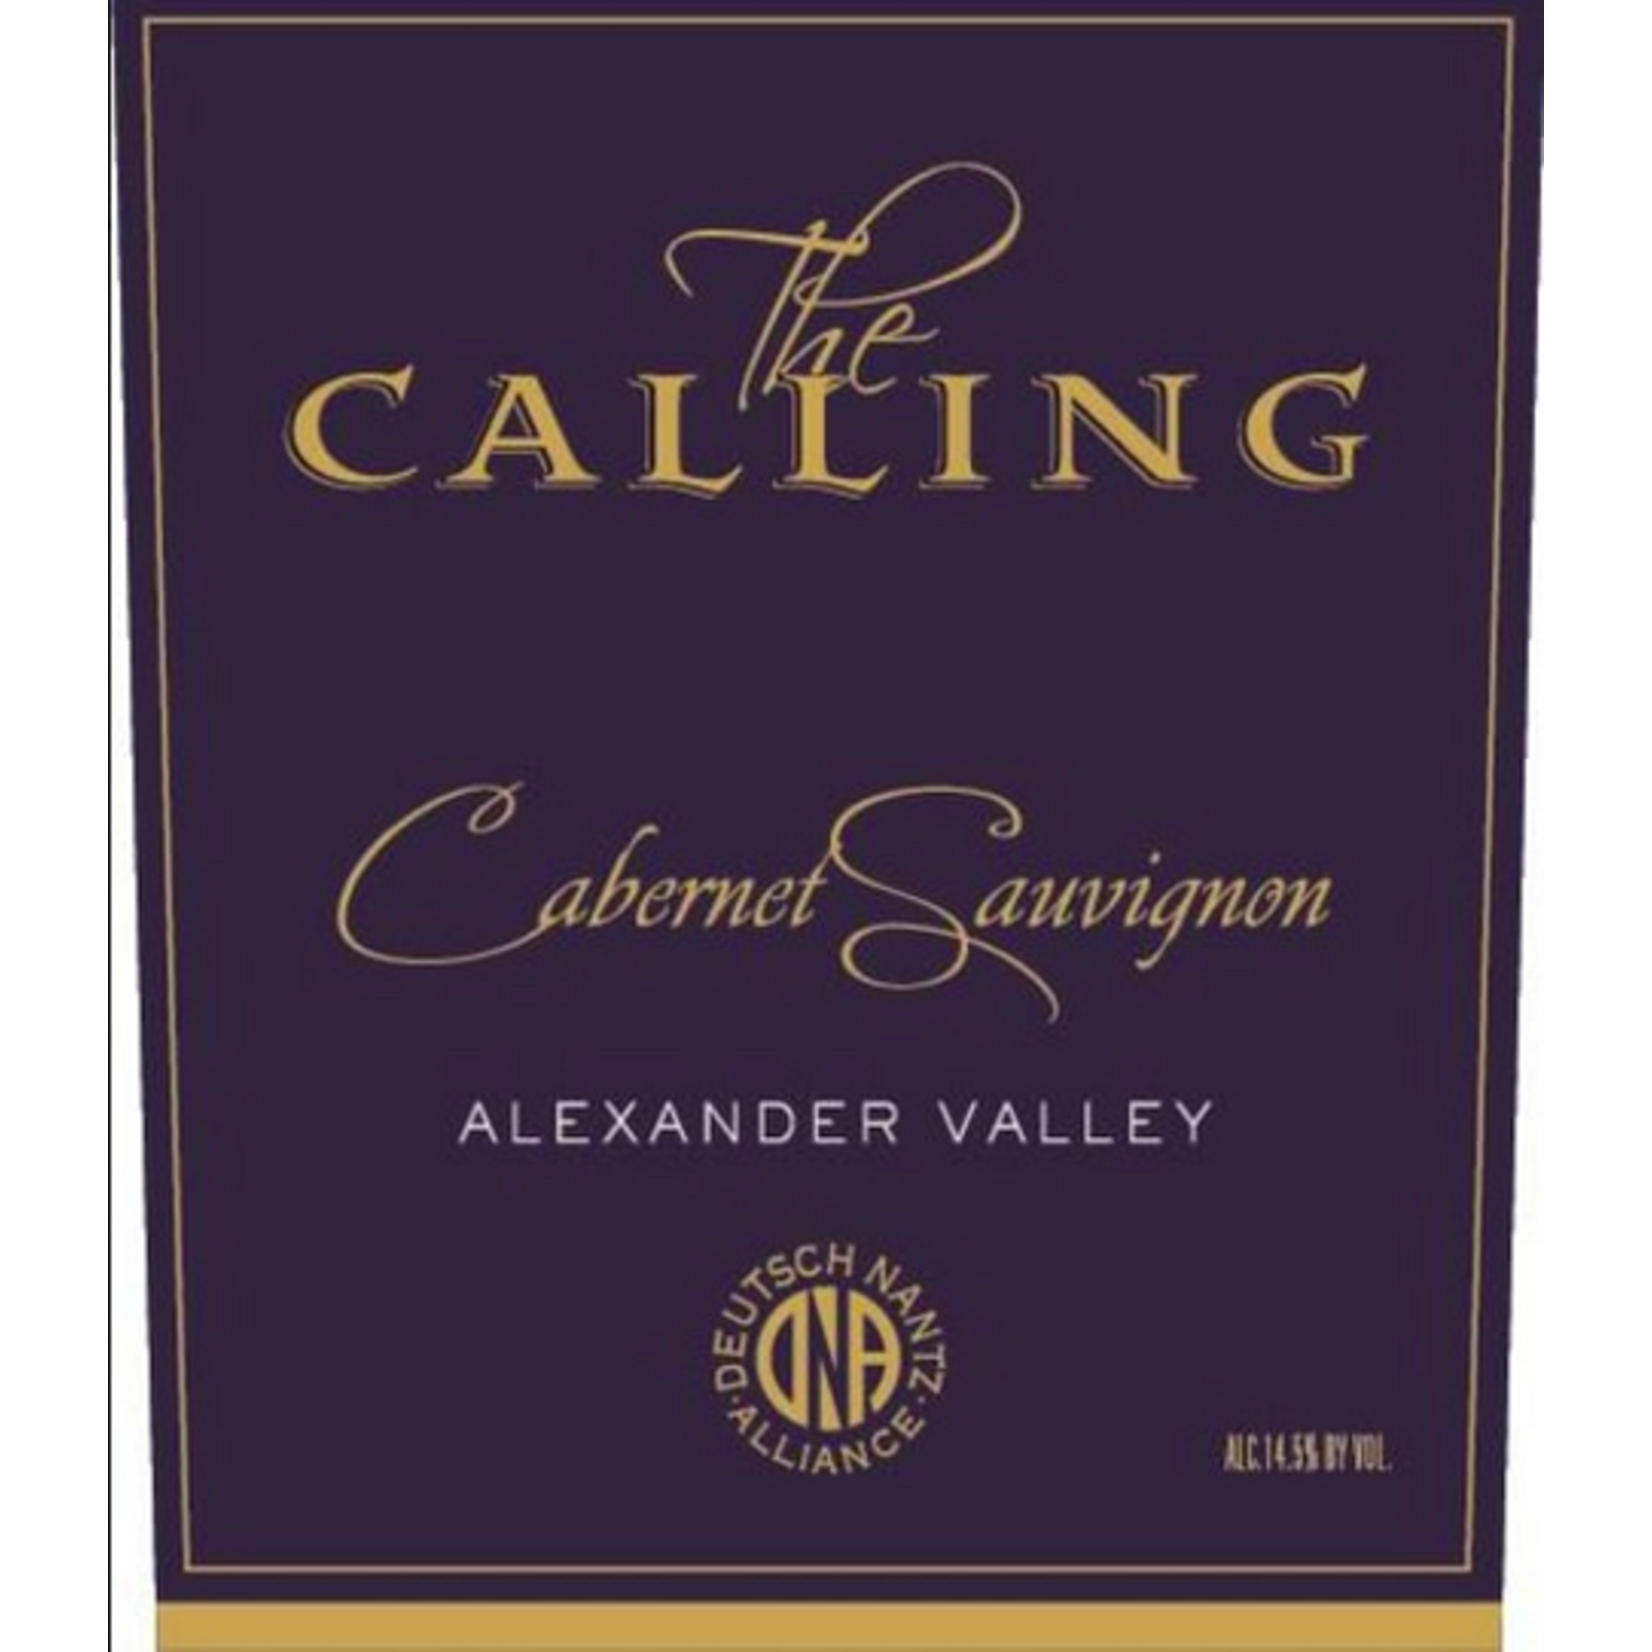 The Calling The Calling Cabernet Sauvignon 2017  Alexander Valley, California